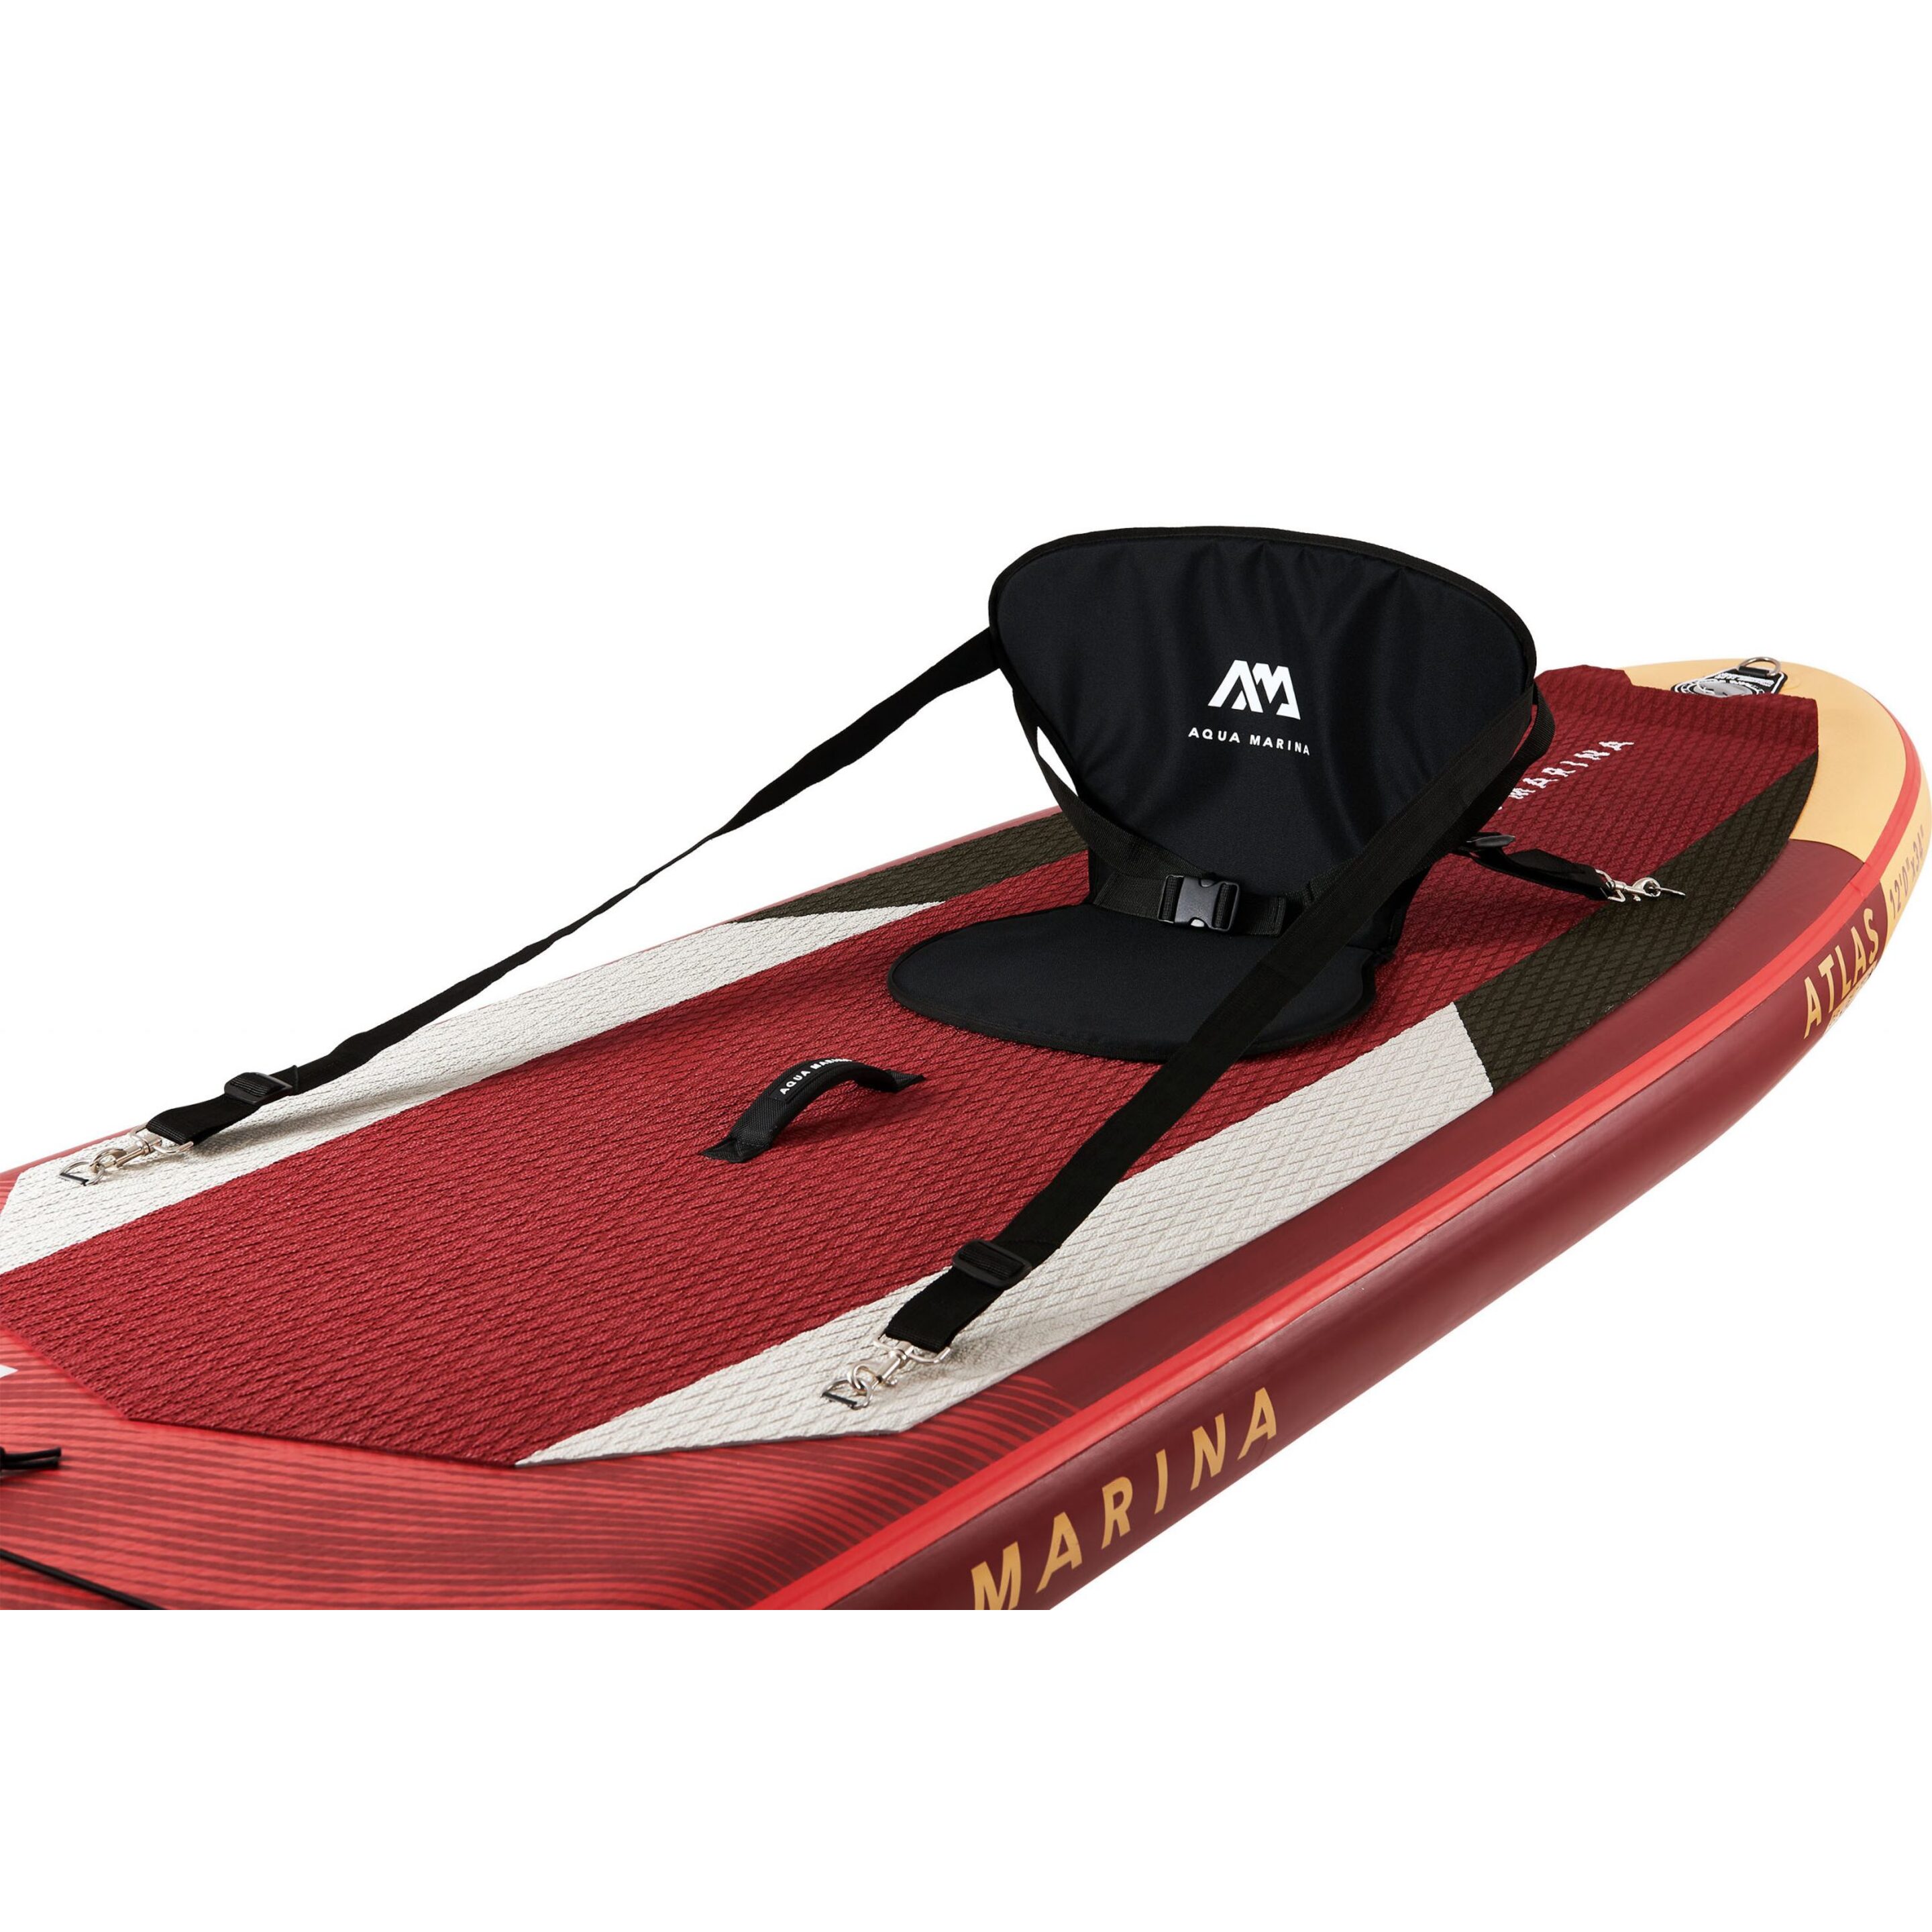 Tabla Paddle Surf Aqua Marina Atlas 12’0?